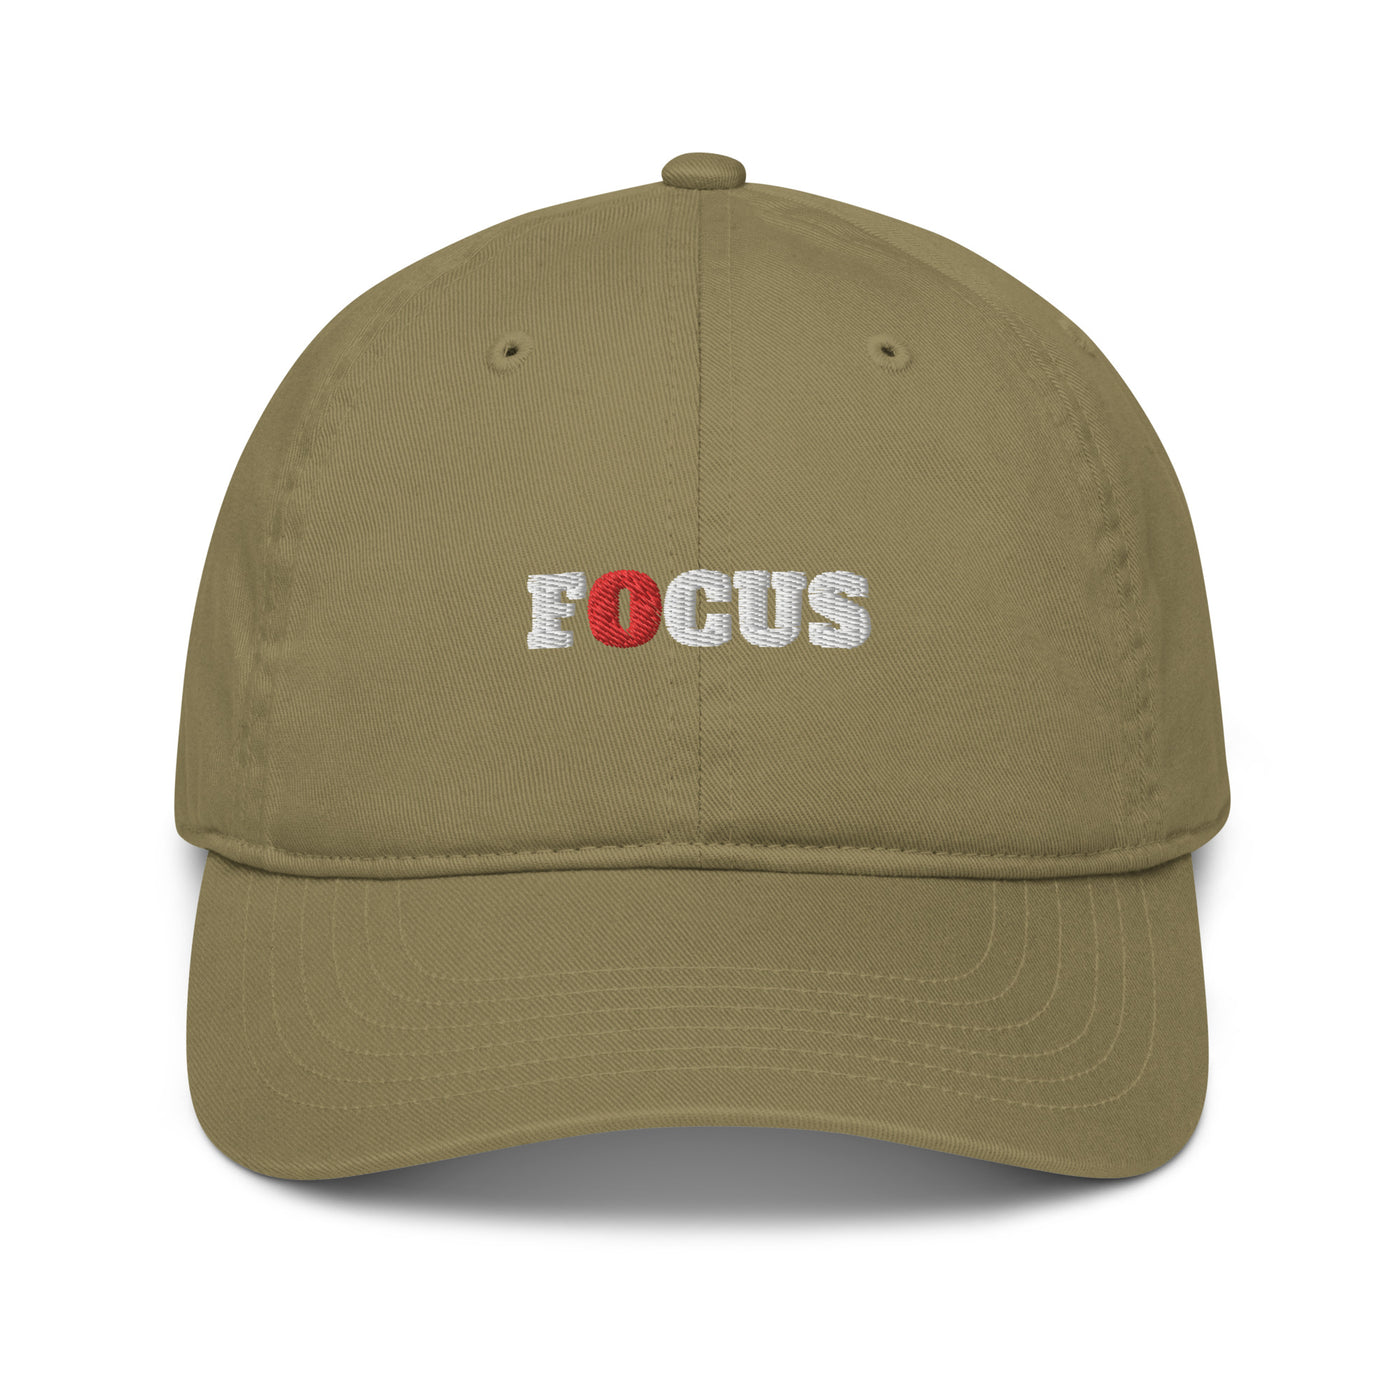 Organic Jungle Baseball Cap - Focus